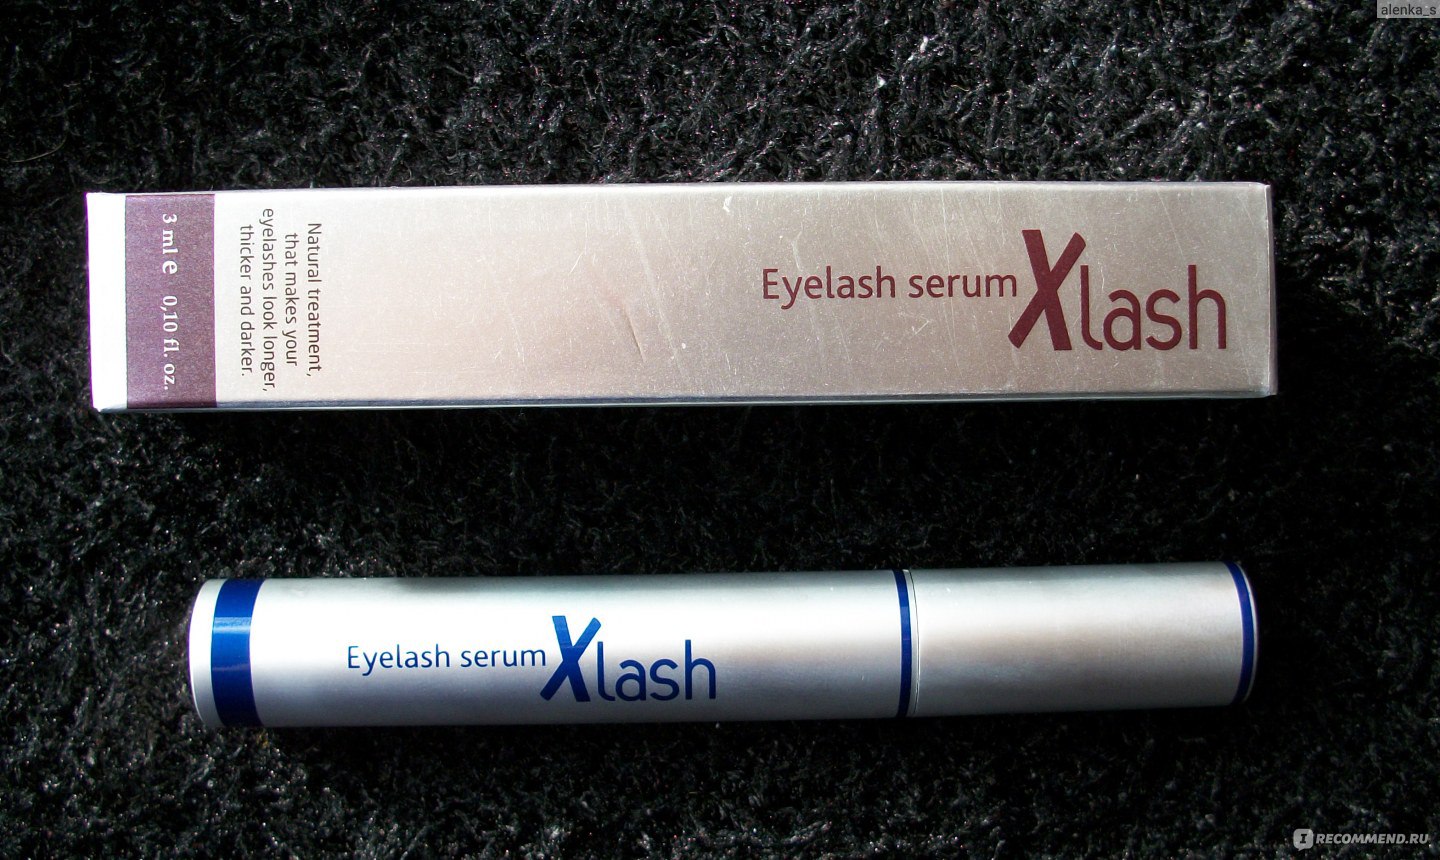 Eyelash serum xlash